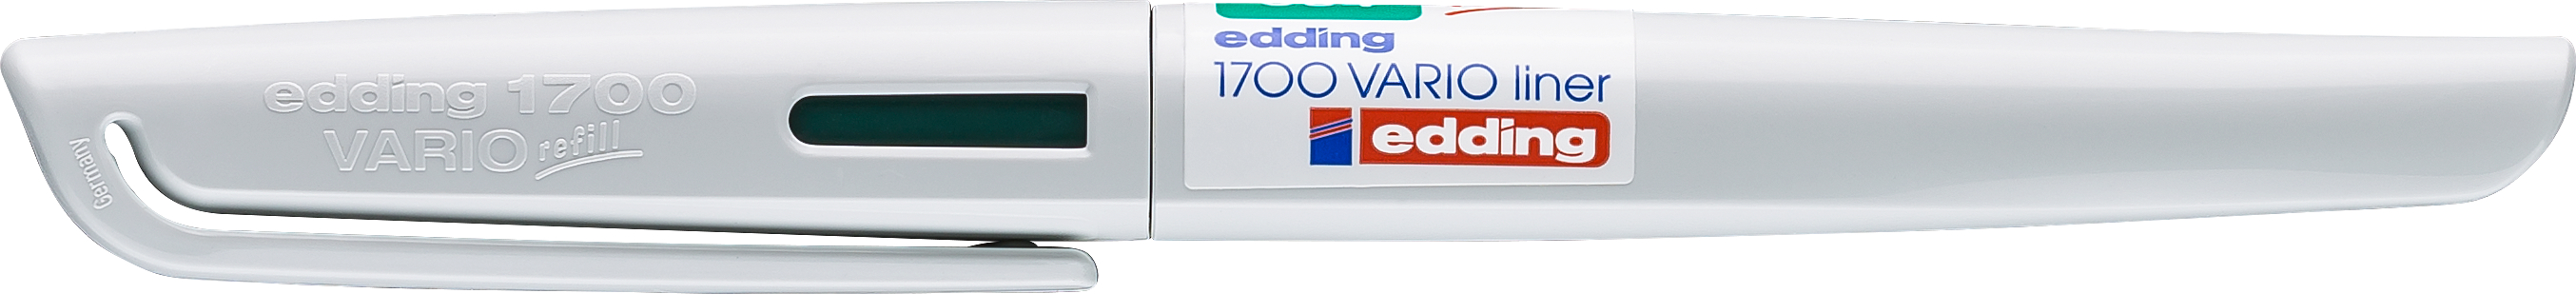 EDDING Fineliner 1700 0.5mm 1700V-4 vert